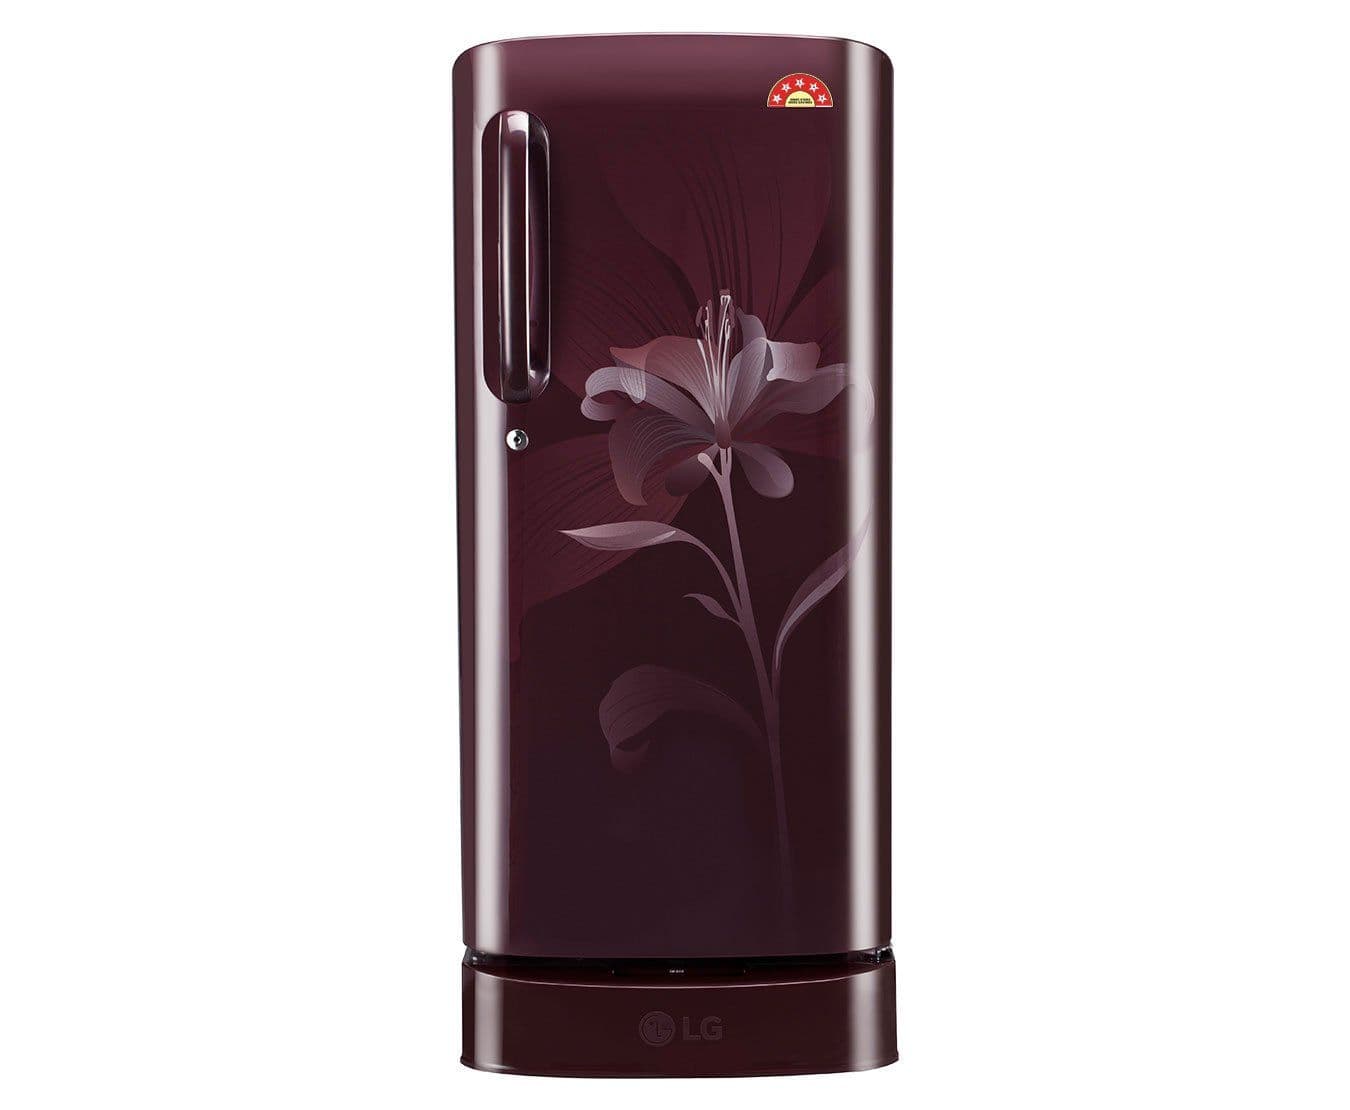 LG GL-D201ASLN 190 Ltr Single Door Refrigerator